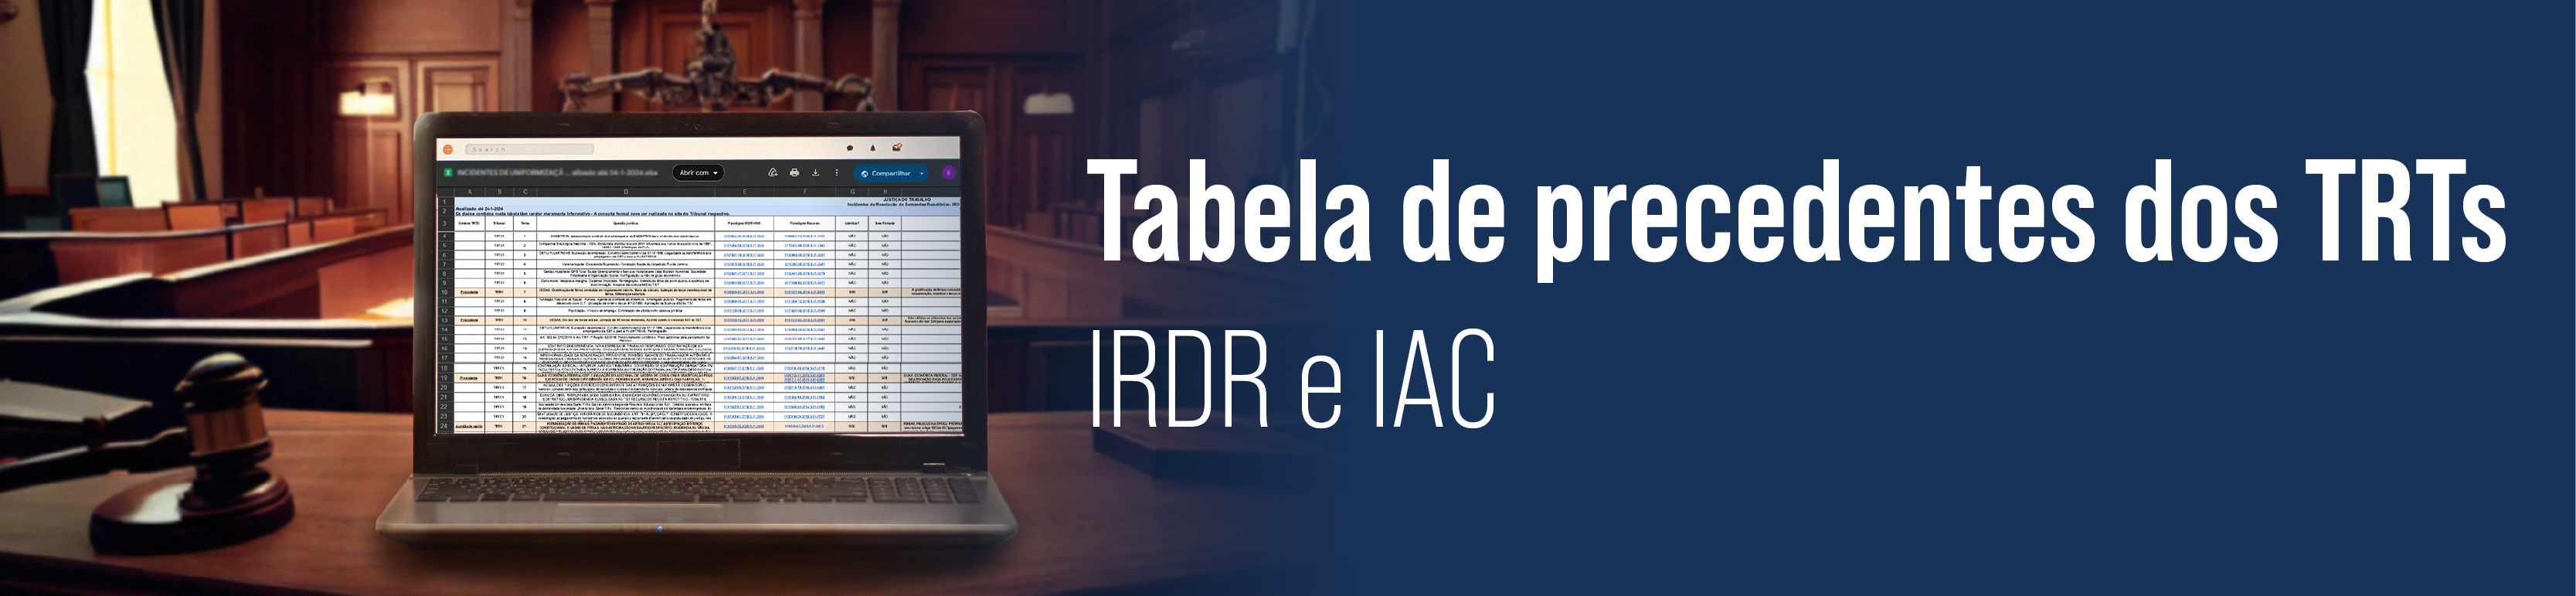 Imagem ilustrativa com o texto: Tabela de precedentes dos TRTs IRDR e IAC